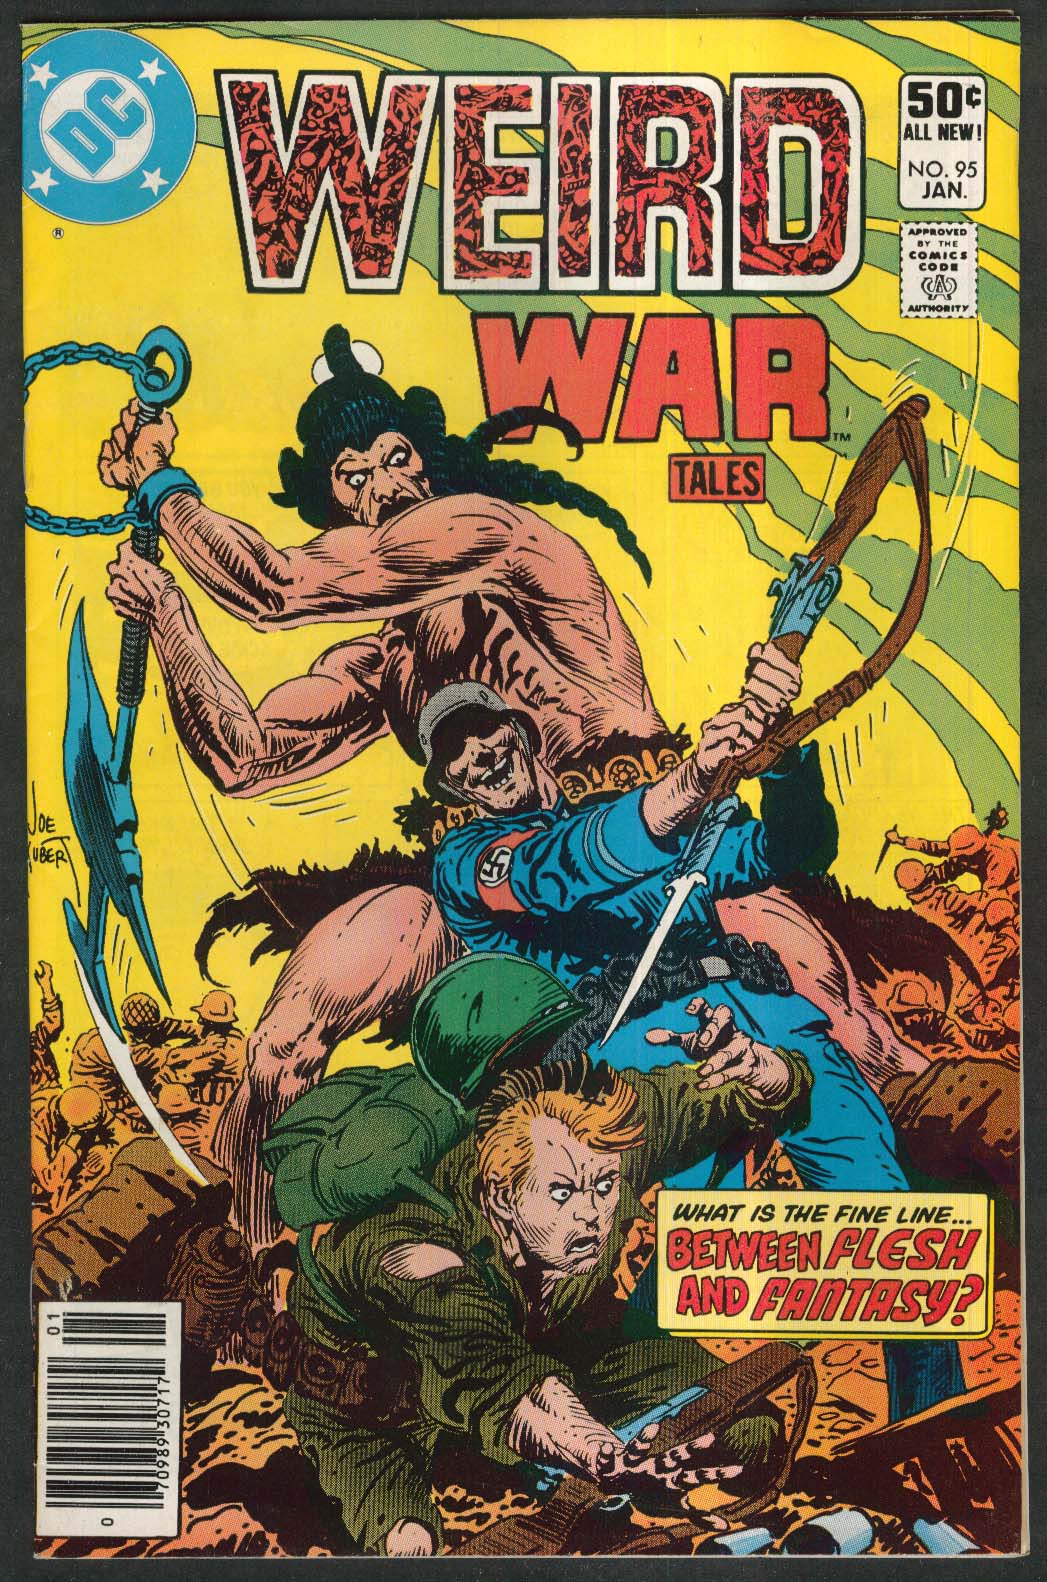 WEIRD WAR TALES #95 DC comic book 1 1981